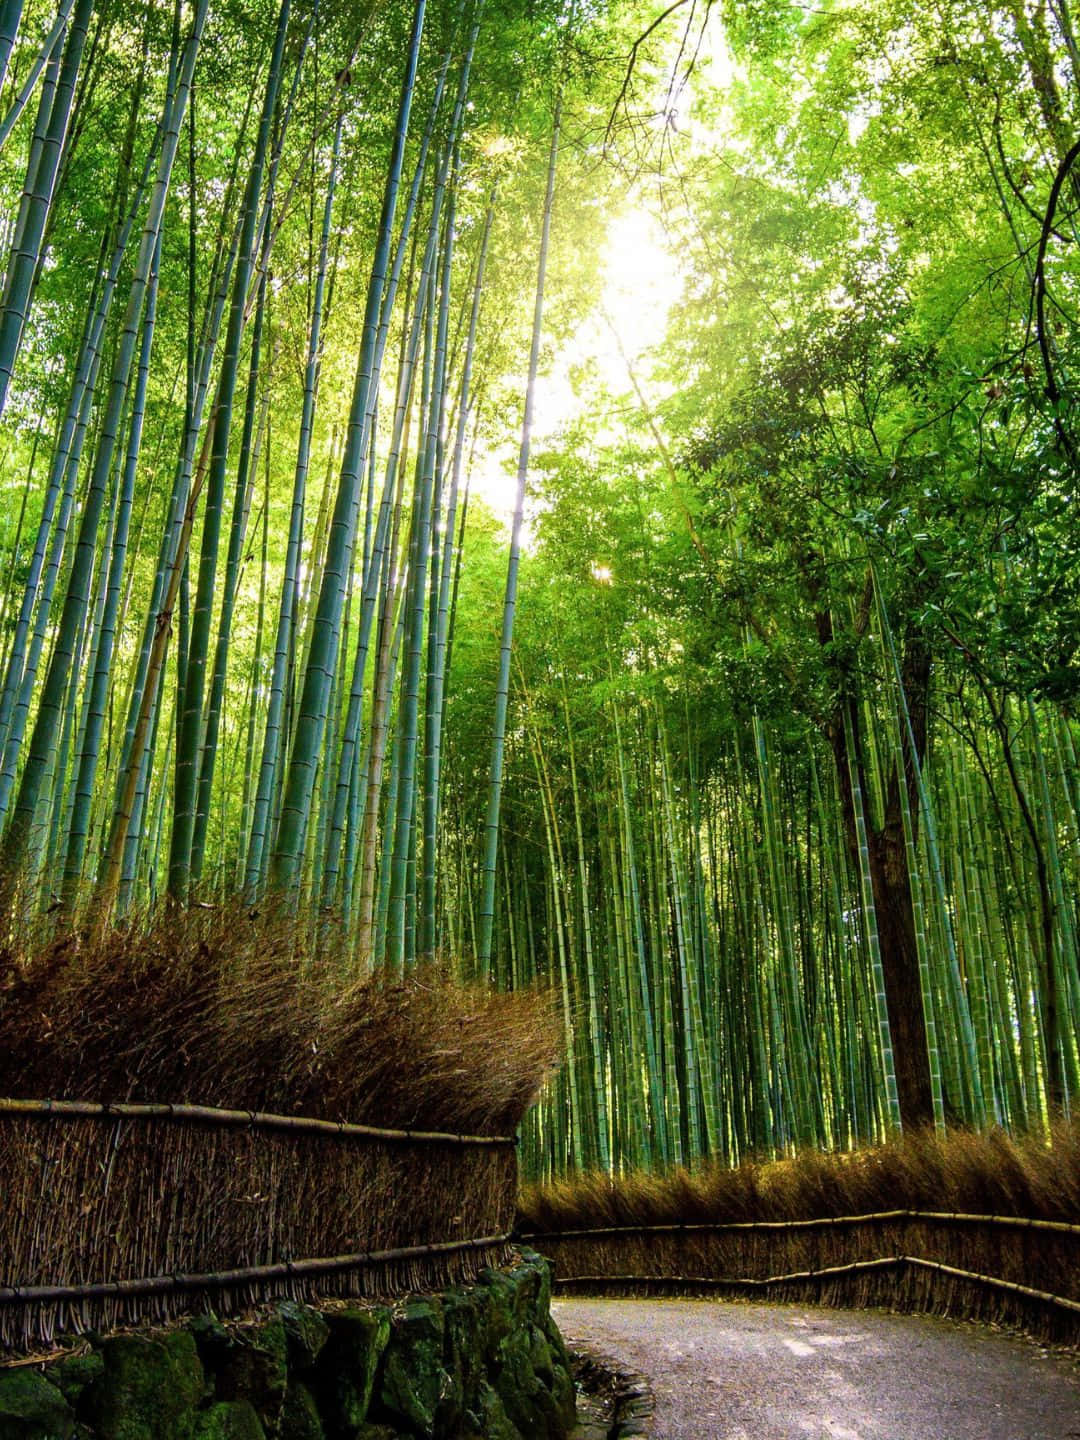 Fundode Tela De Bambu Em 1440p Com Uma Estrada Repleta De Árvores De Bambu.